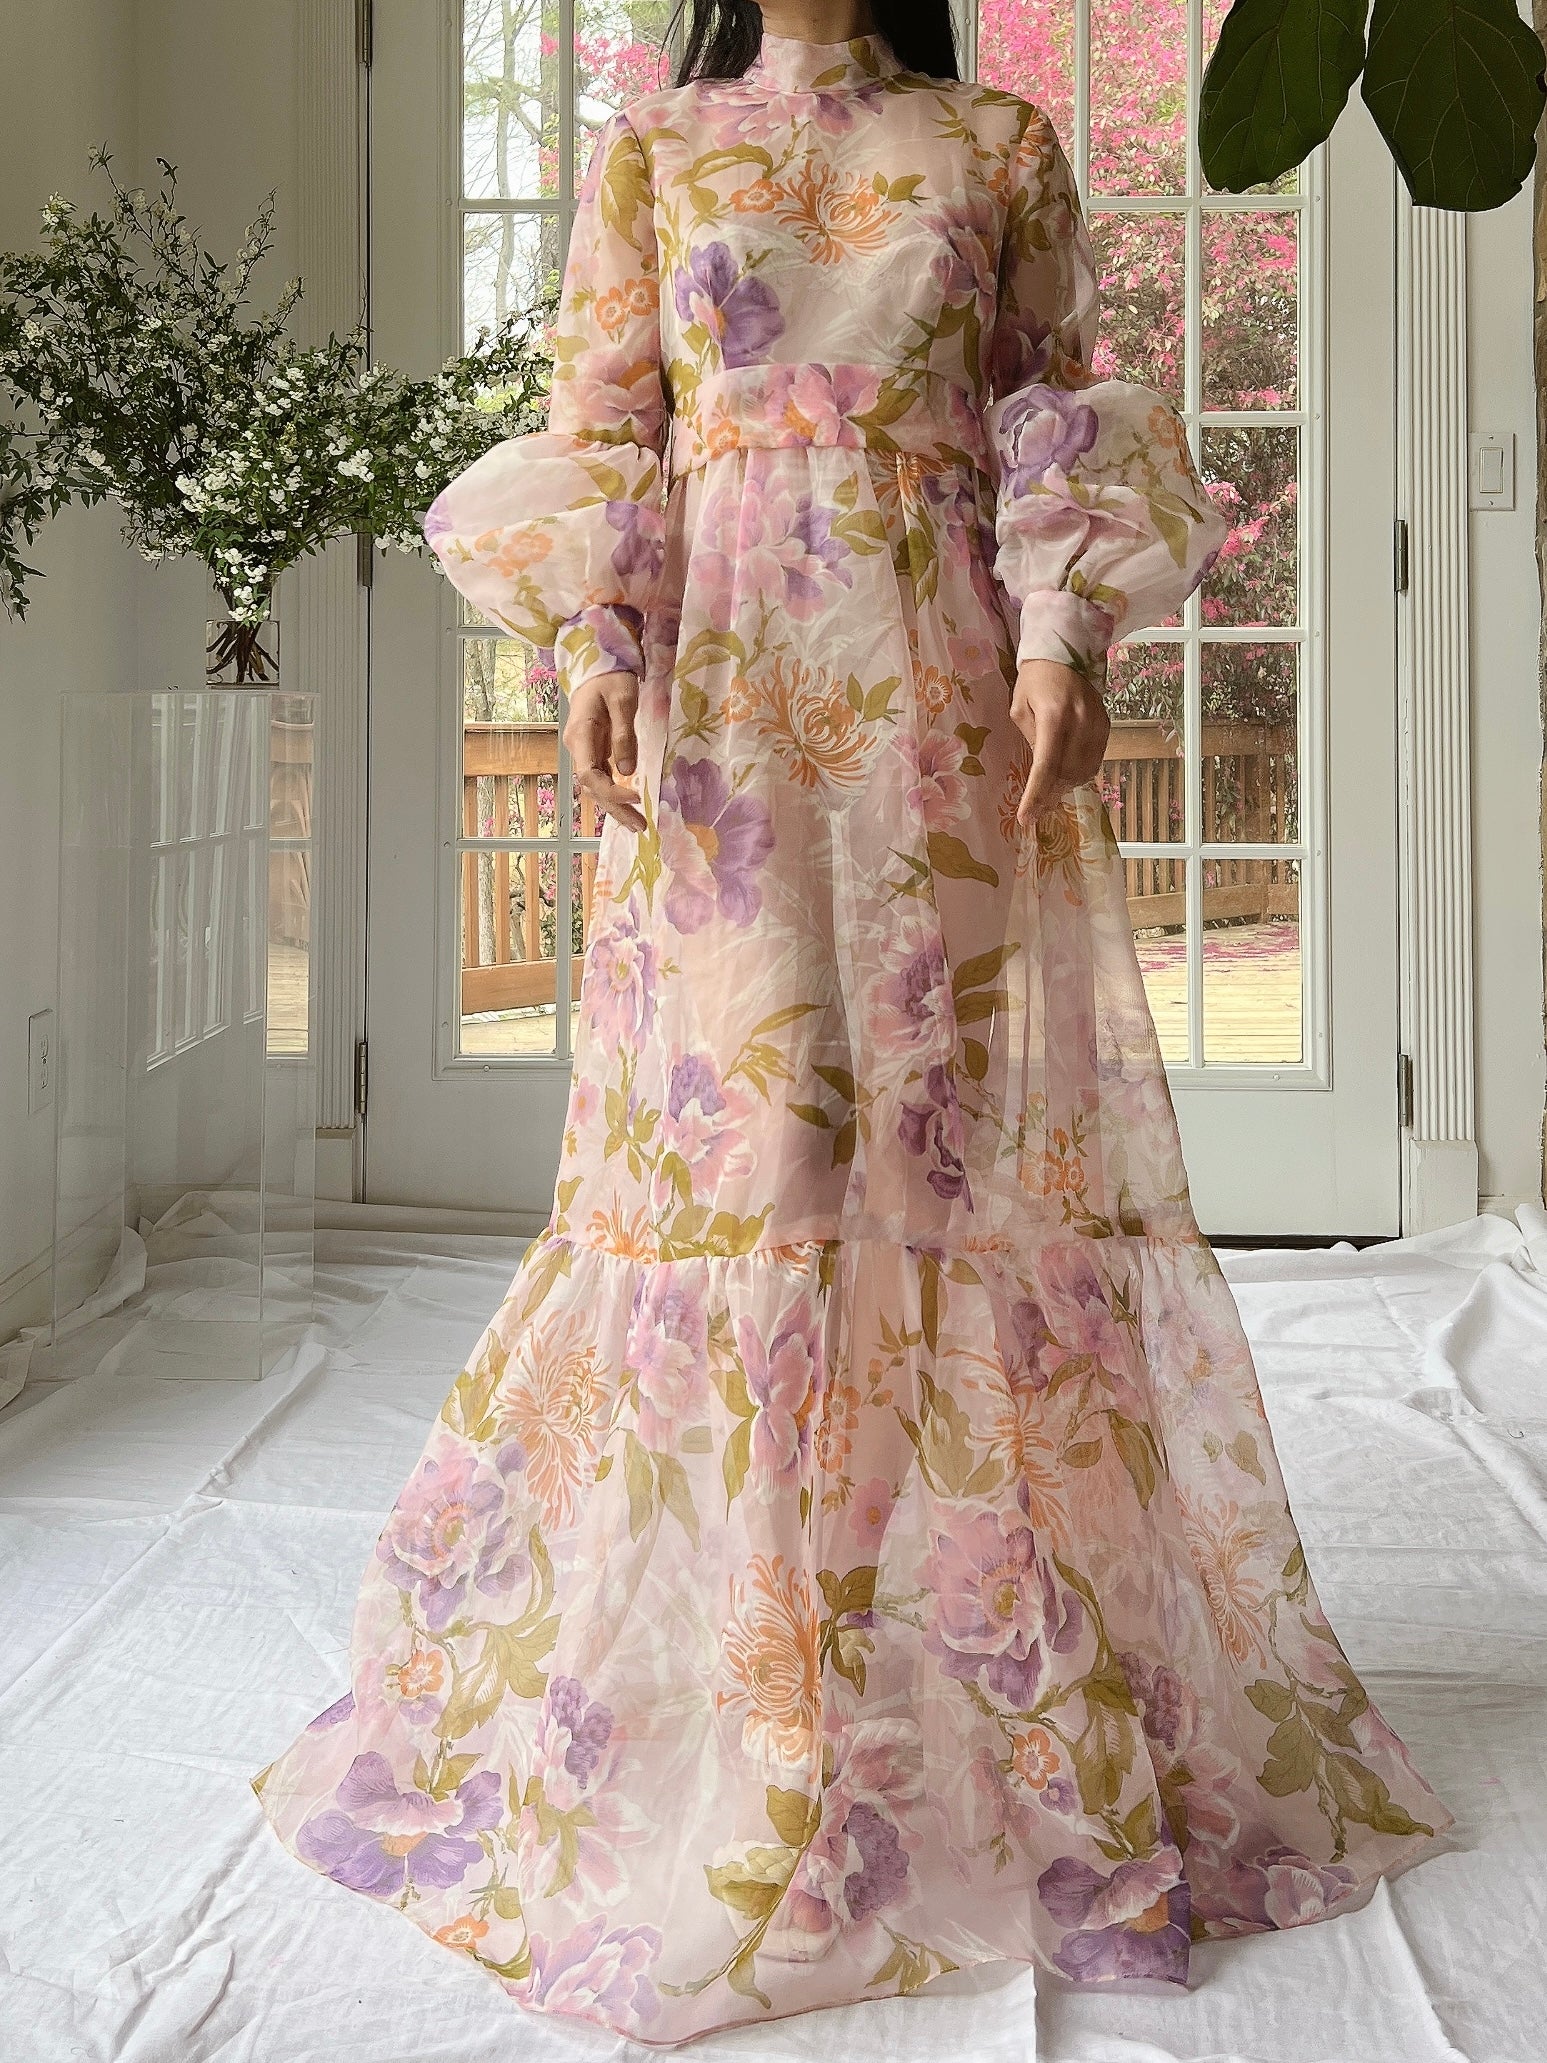 Vintage Sheer Pink Floral Voile Dress - M